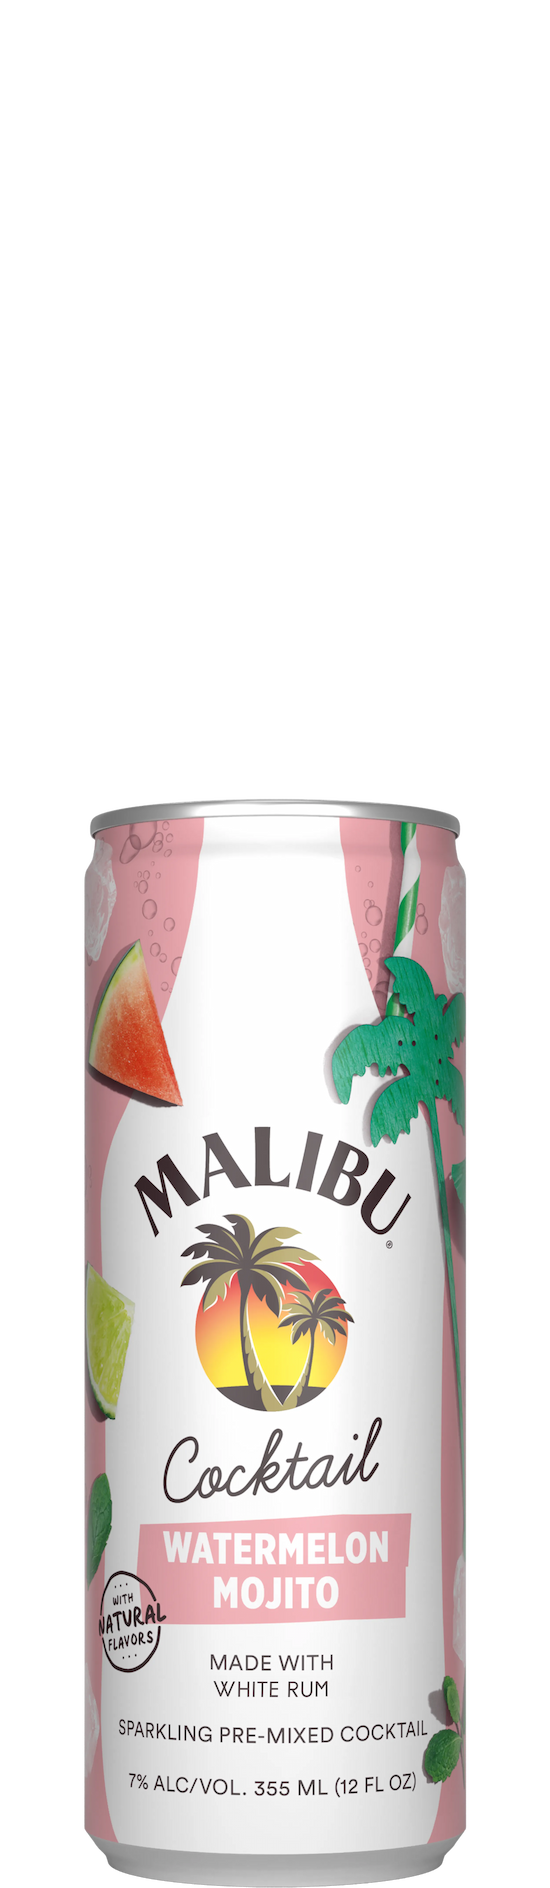 Malibu RTDD Cocktail can watermelon mojito